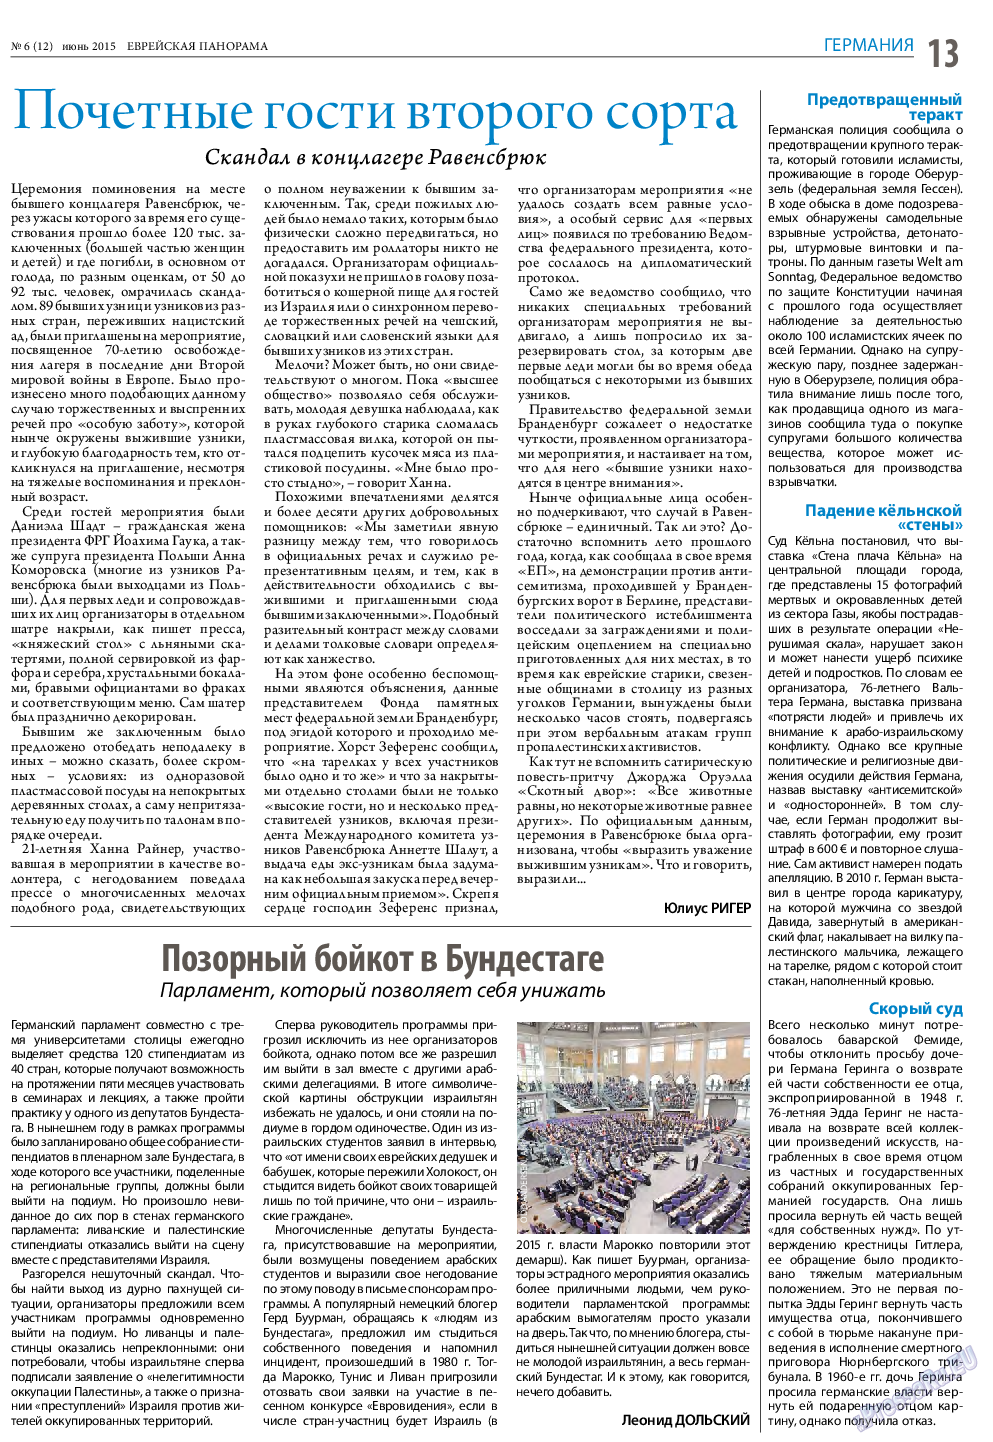 Еврейская панорама (газета). 2015 год, номер 6, стр. 13